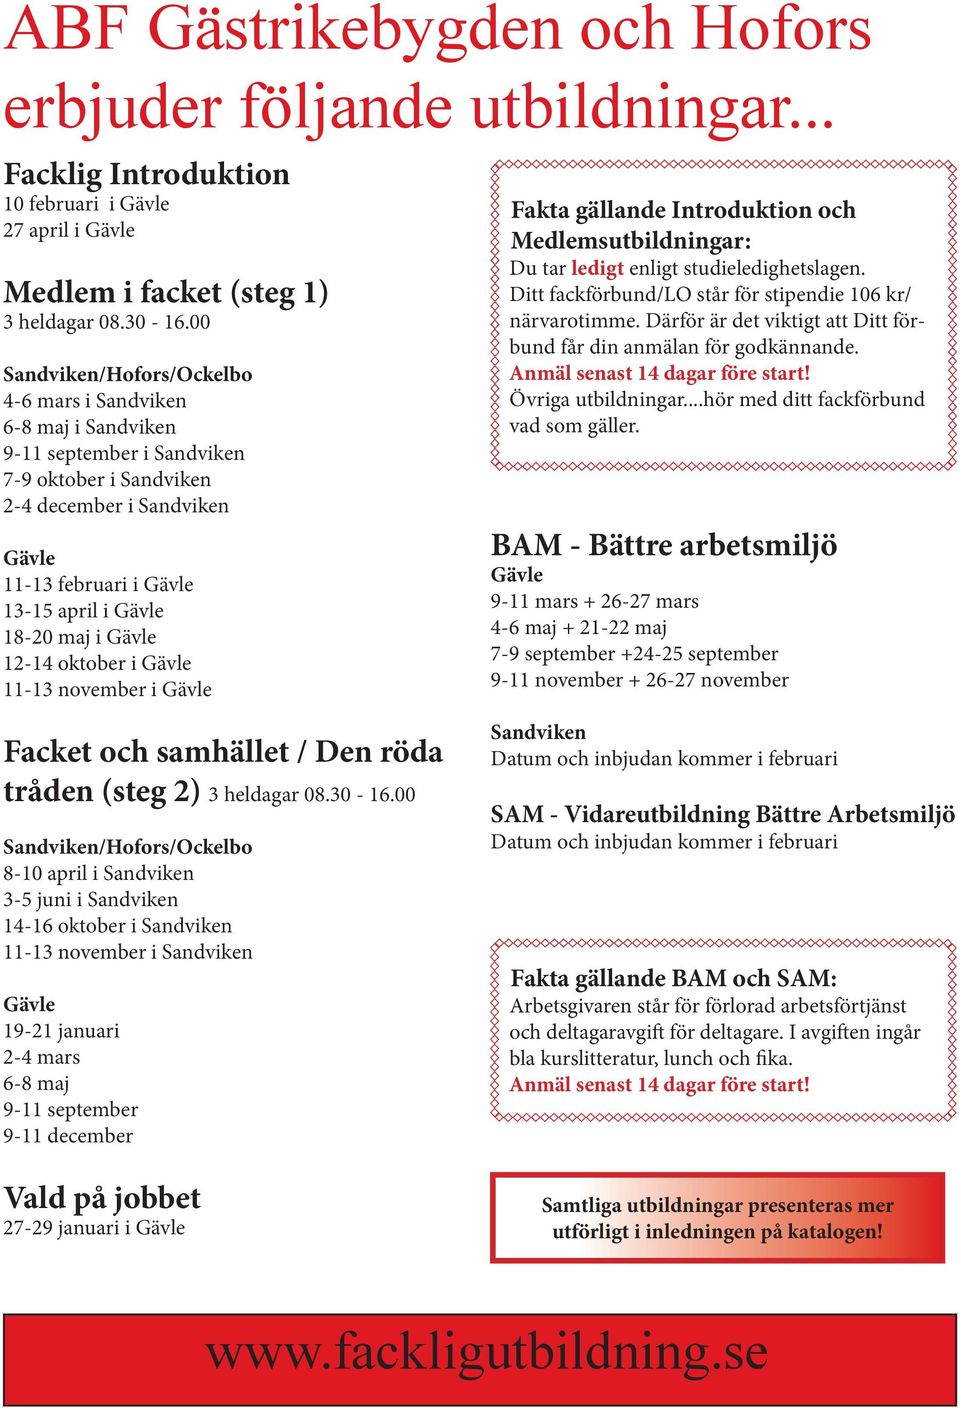 maj i Gävle 12-14 oktober i Gävle 11-13 november i Gävle Fakta gällande Introduktion och Medlemsutbildningar: Du tar ledigt enligt studieledighetslagen.